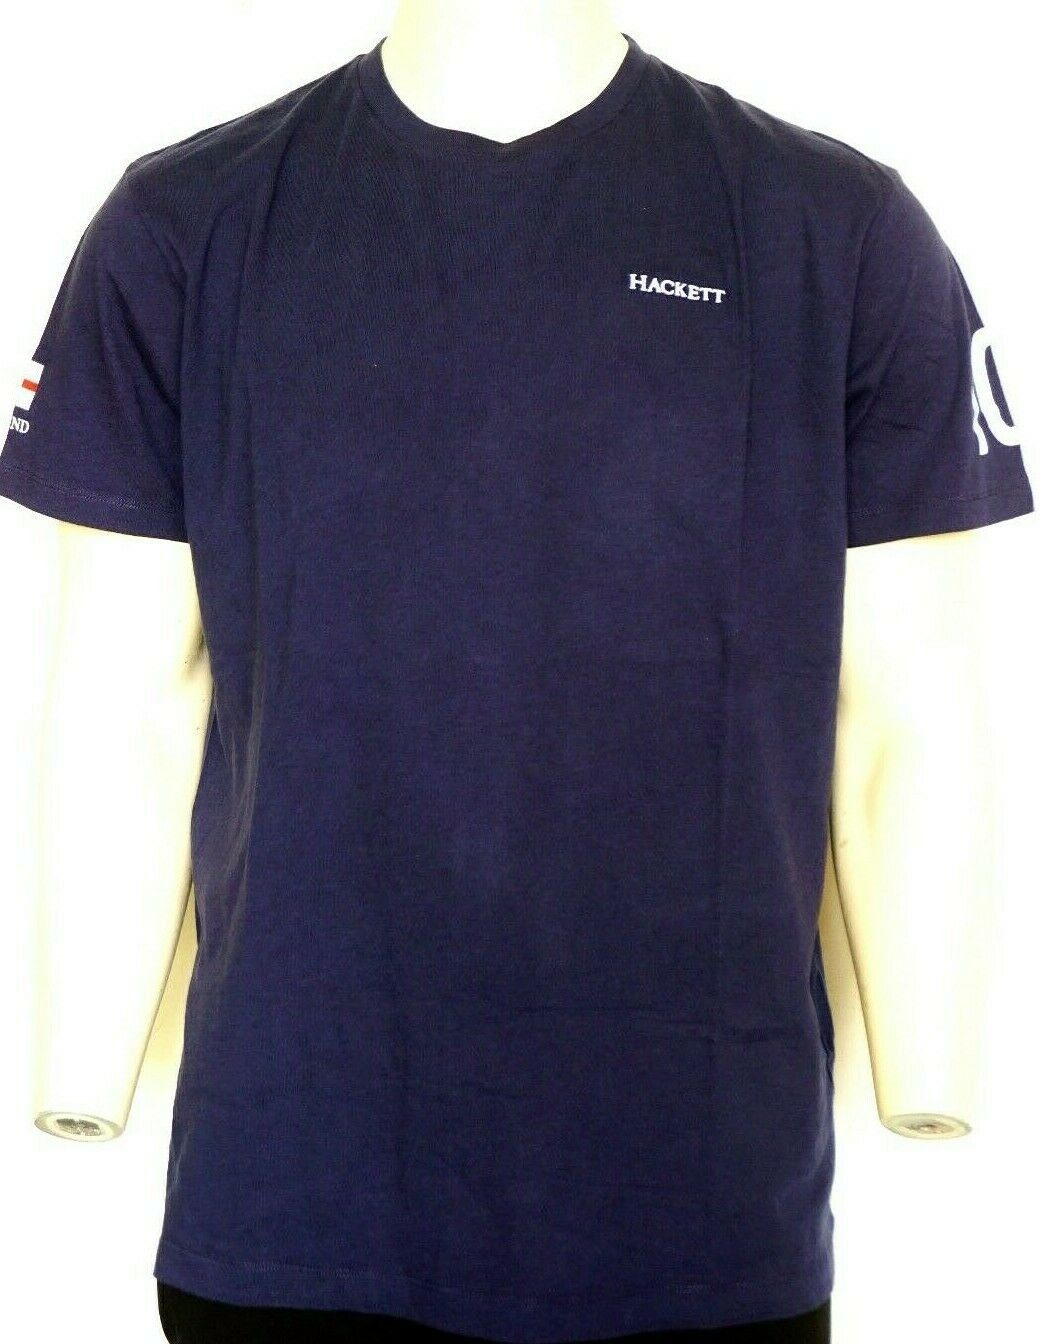 Hacket T-Shirt Hackett Herren T-shirt, Blau World Cup England Hackett T- shirts Herren Kurzarm.